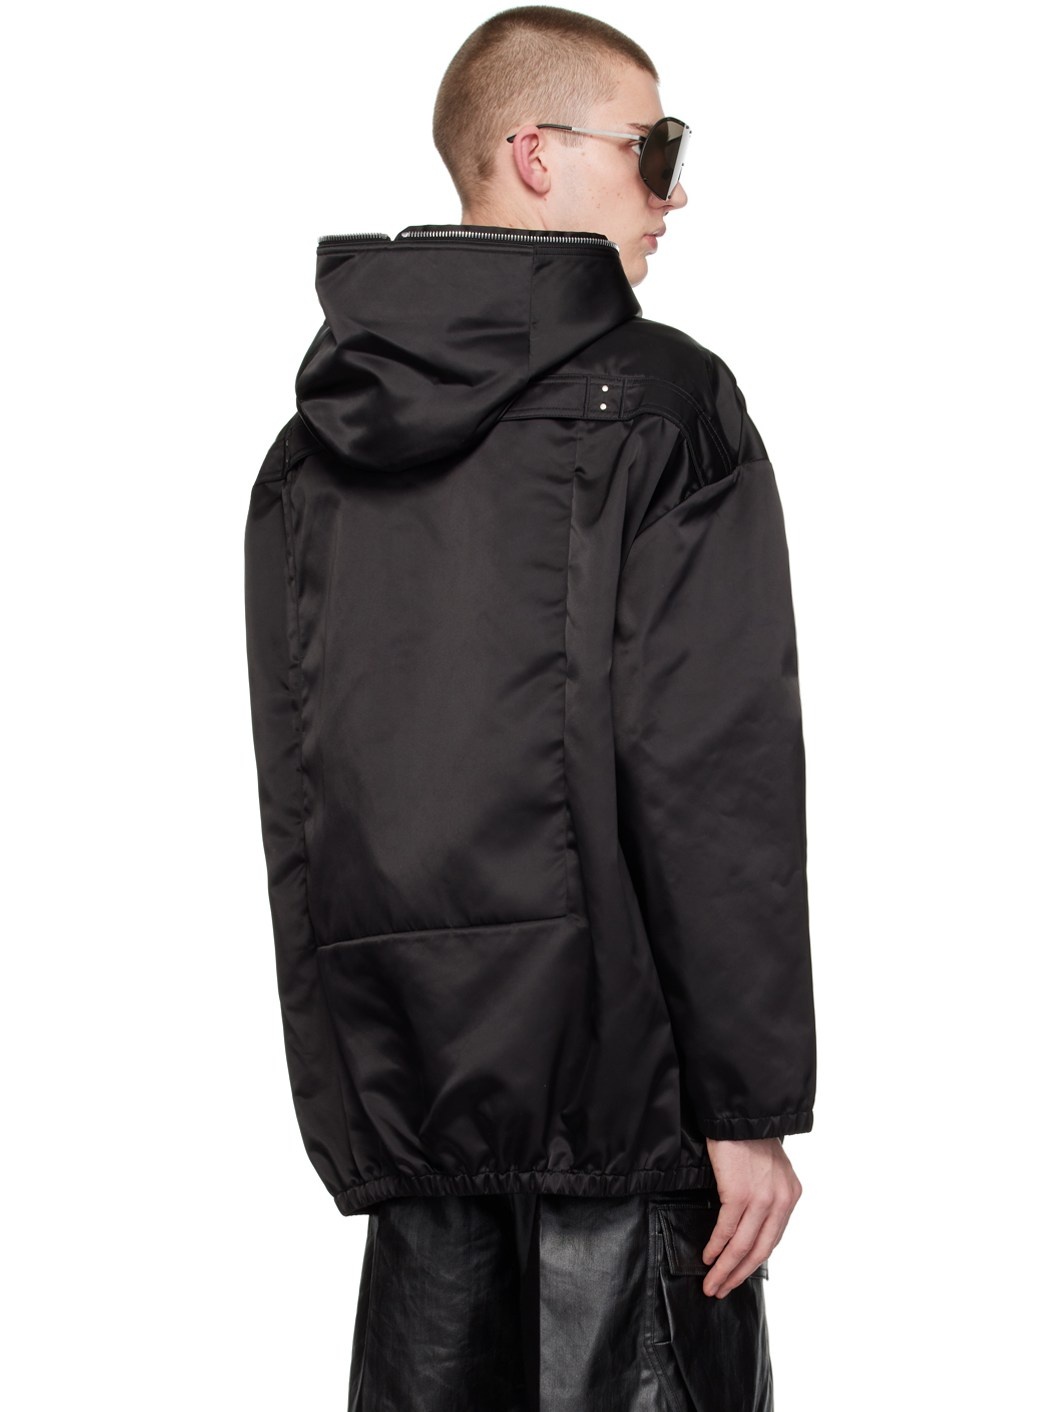 Black Hooded Jacket - 3